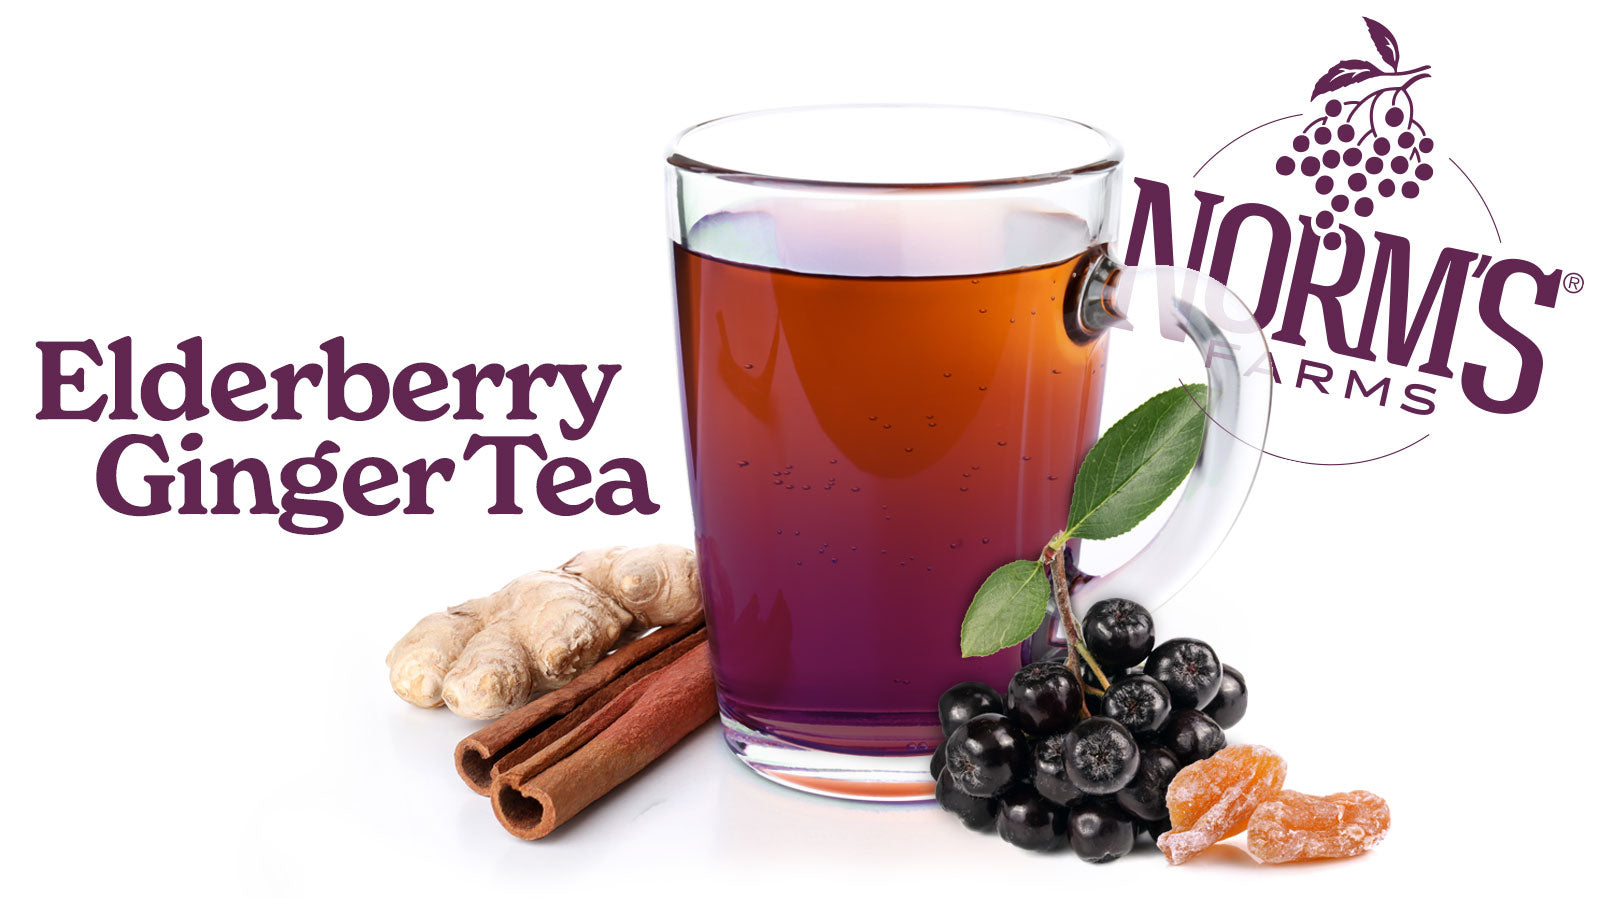 Elderberry Ginger Tea